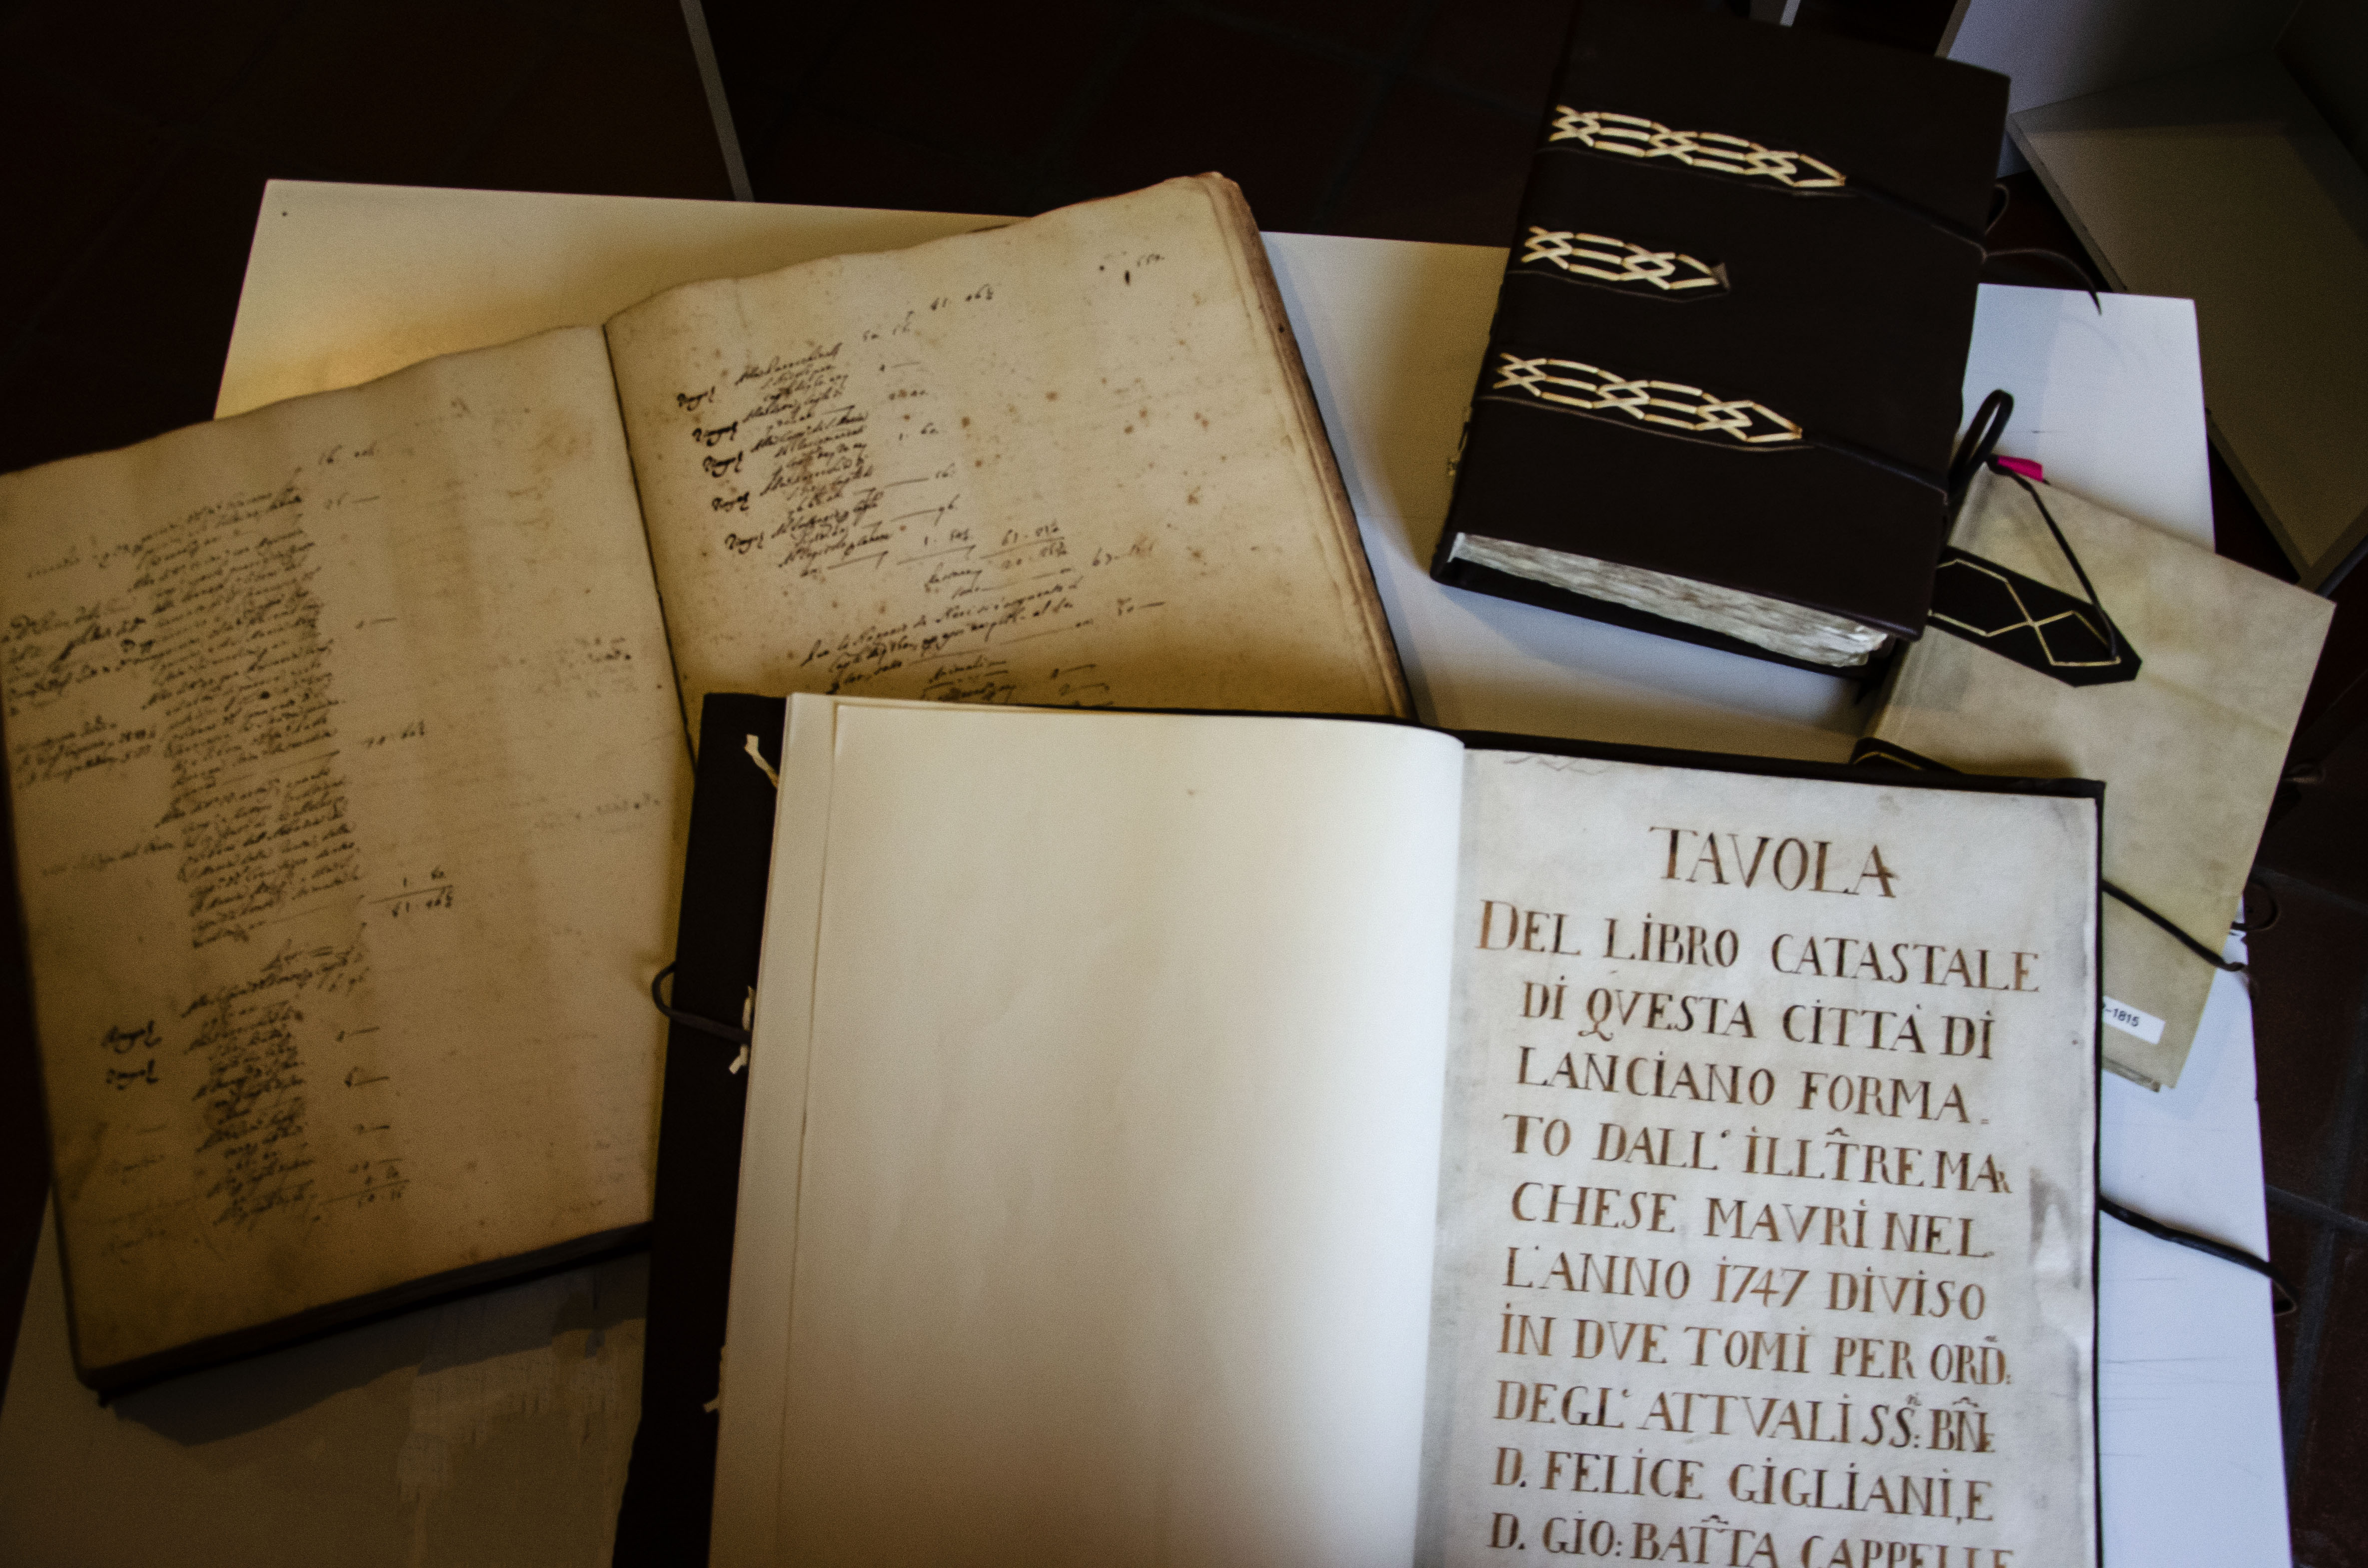 Archivio storico di Lanciano, libri antichi